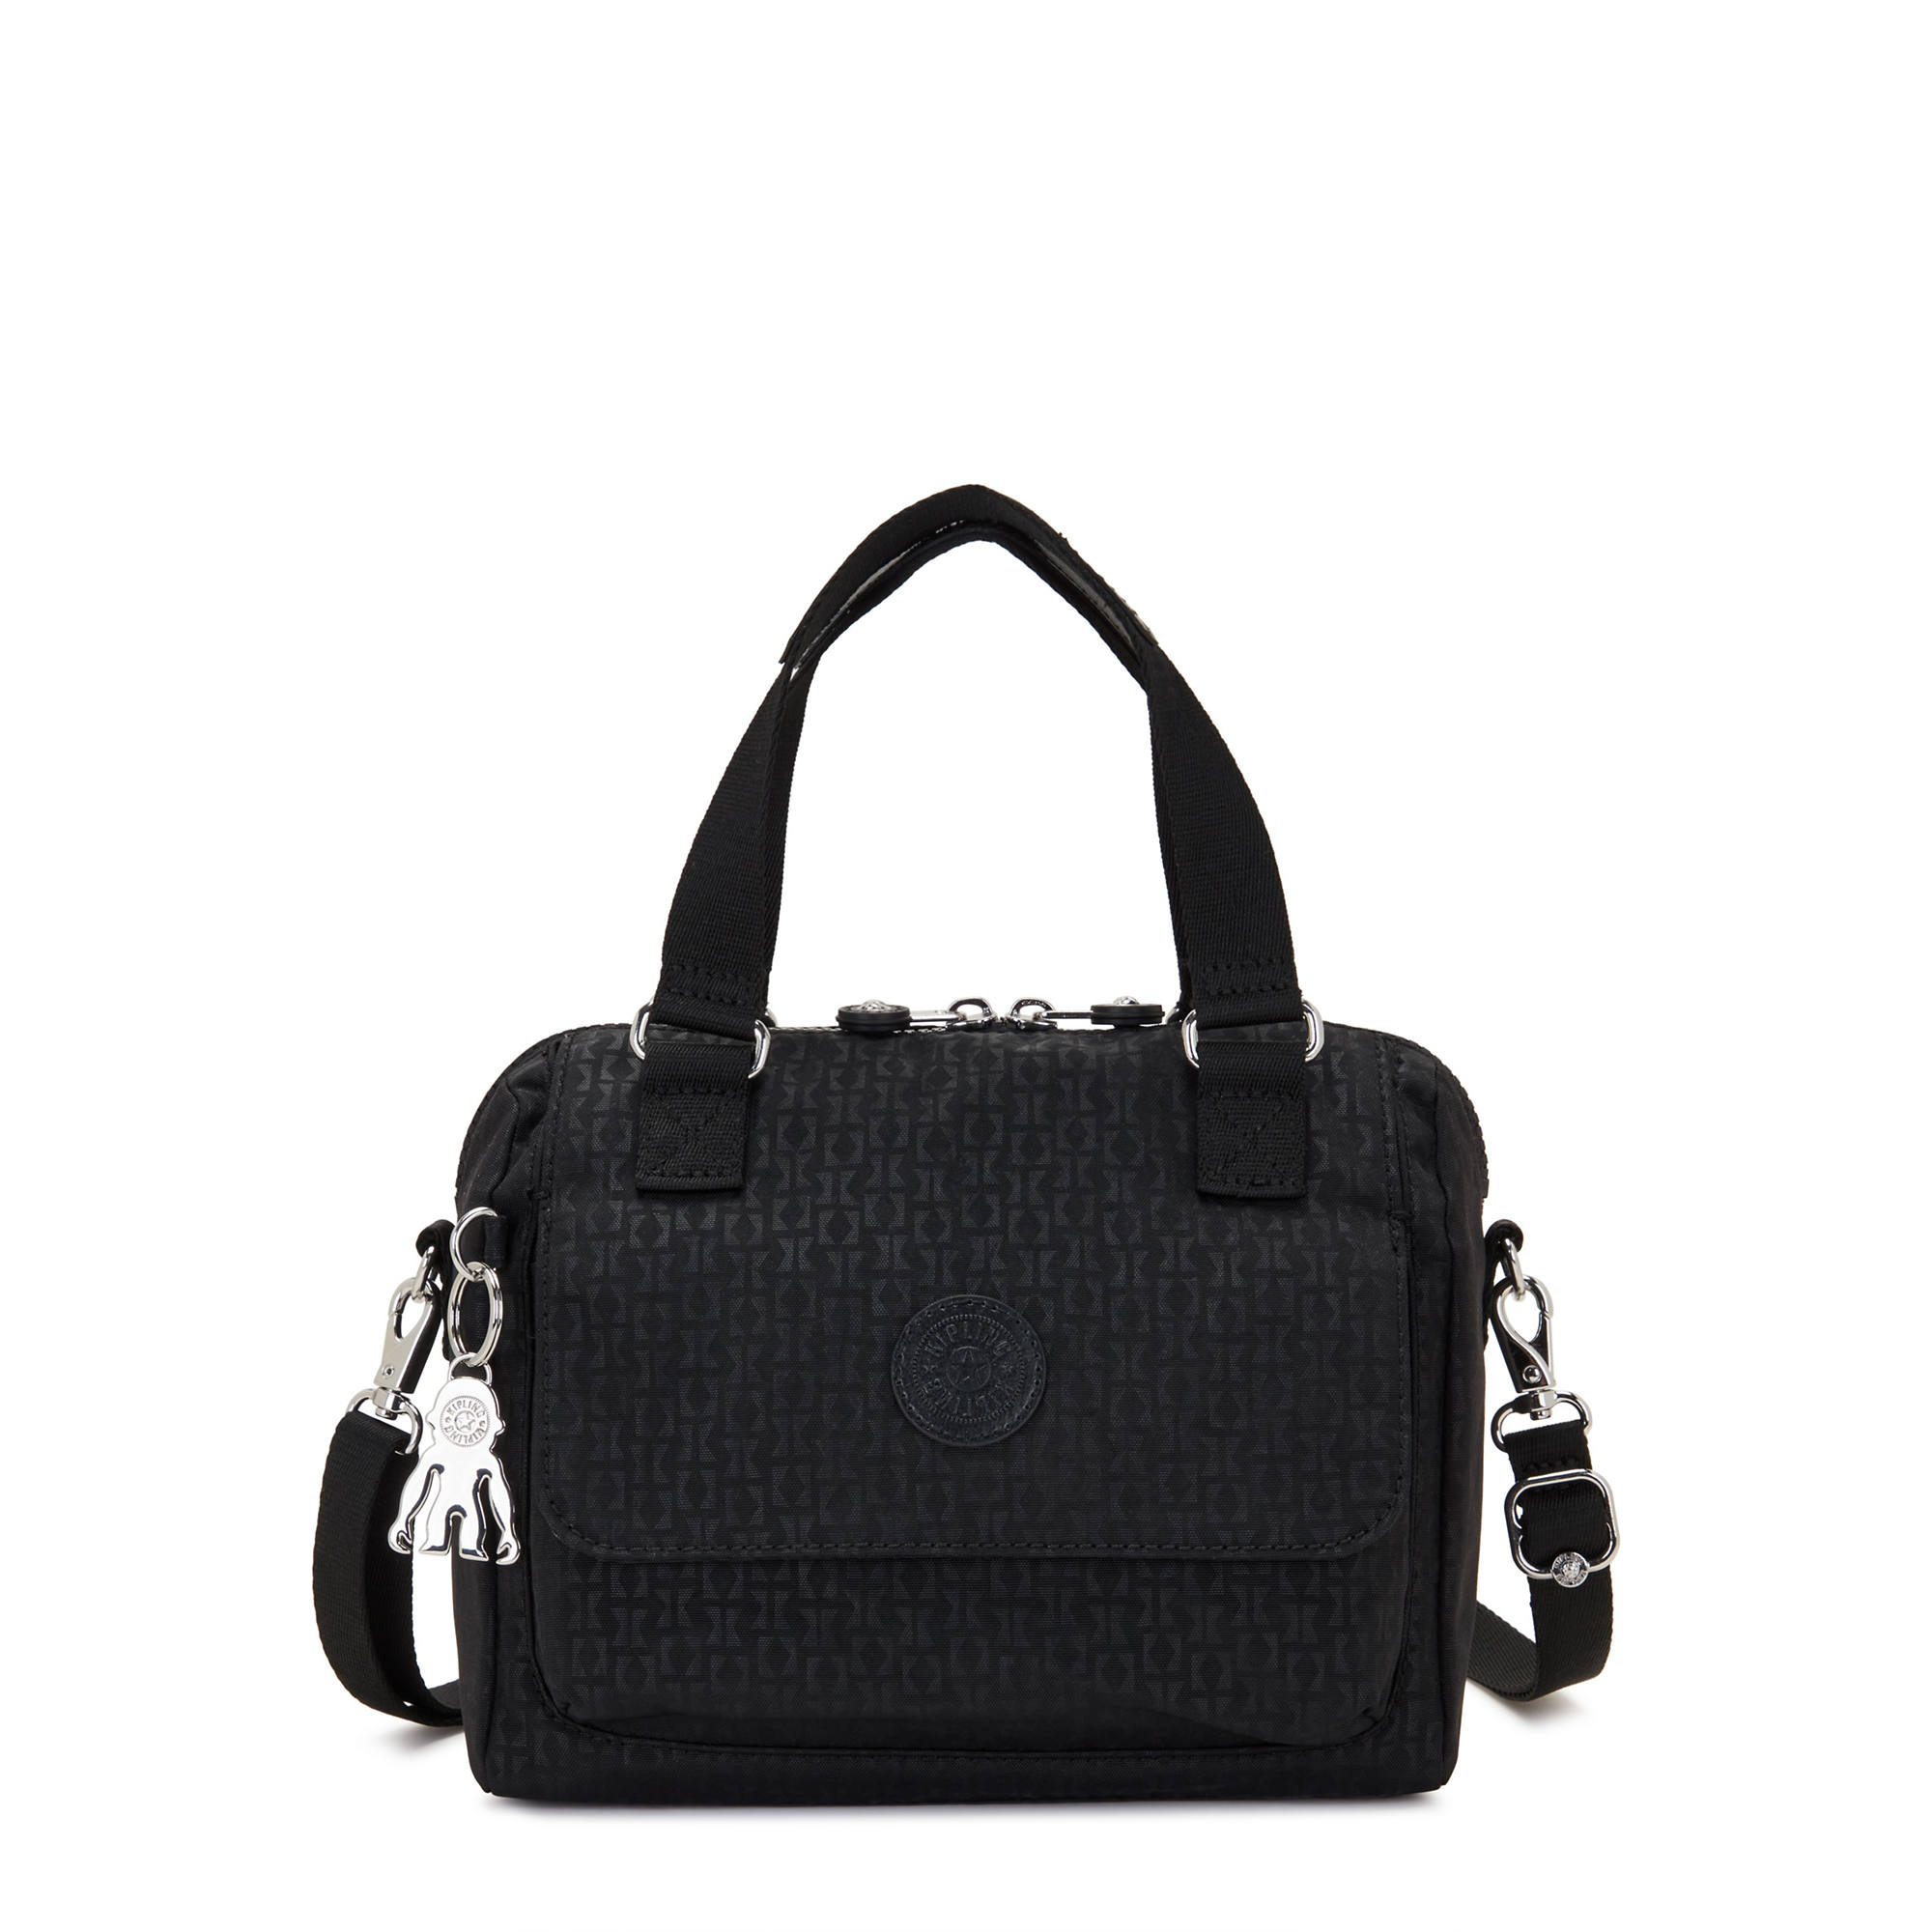 Kipling Handbags, Bags & Purses | John Lewis & Partners